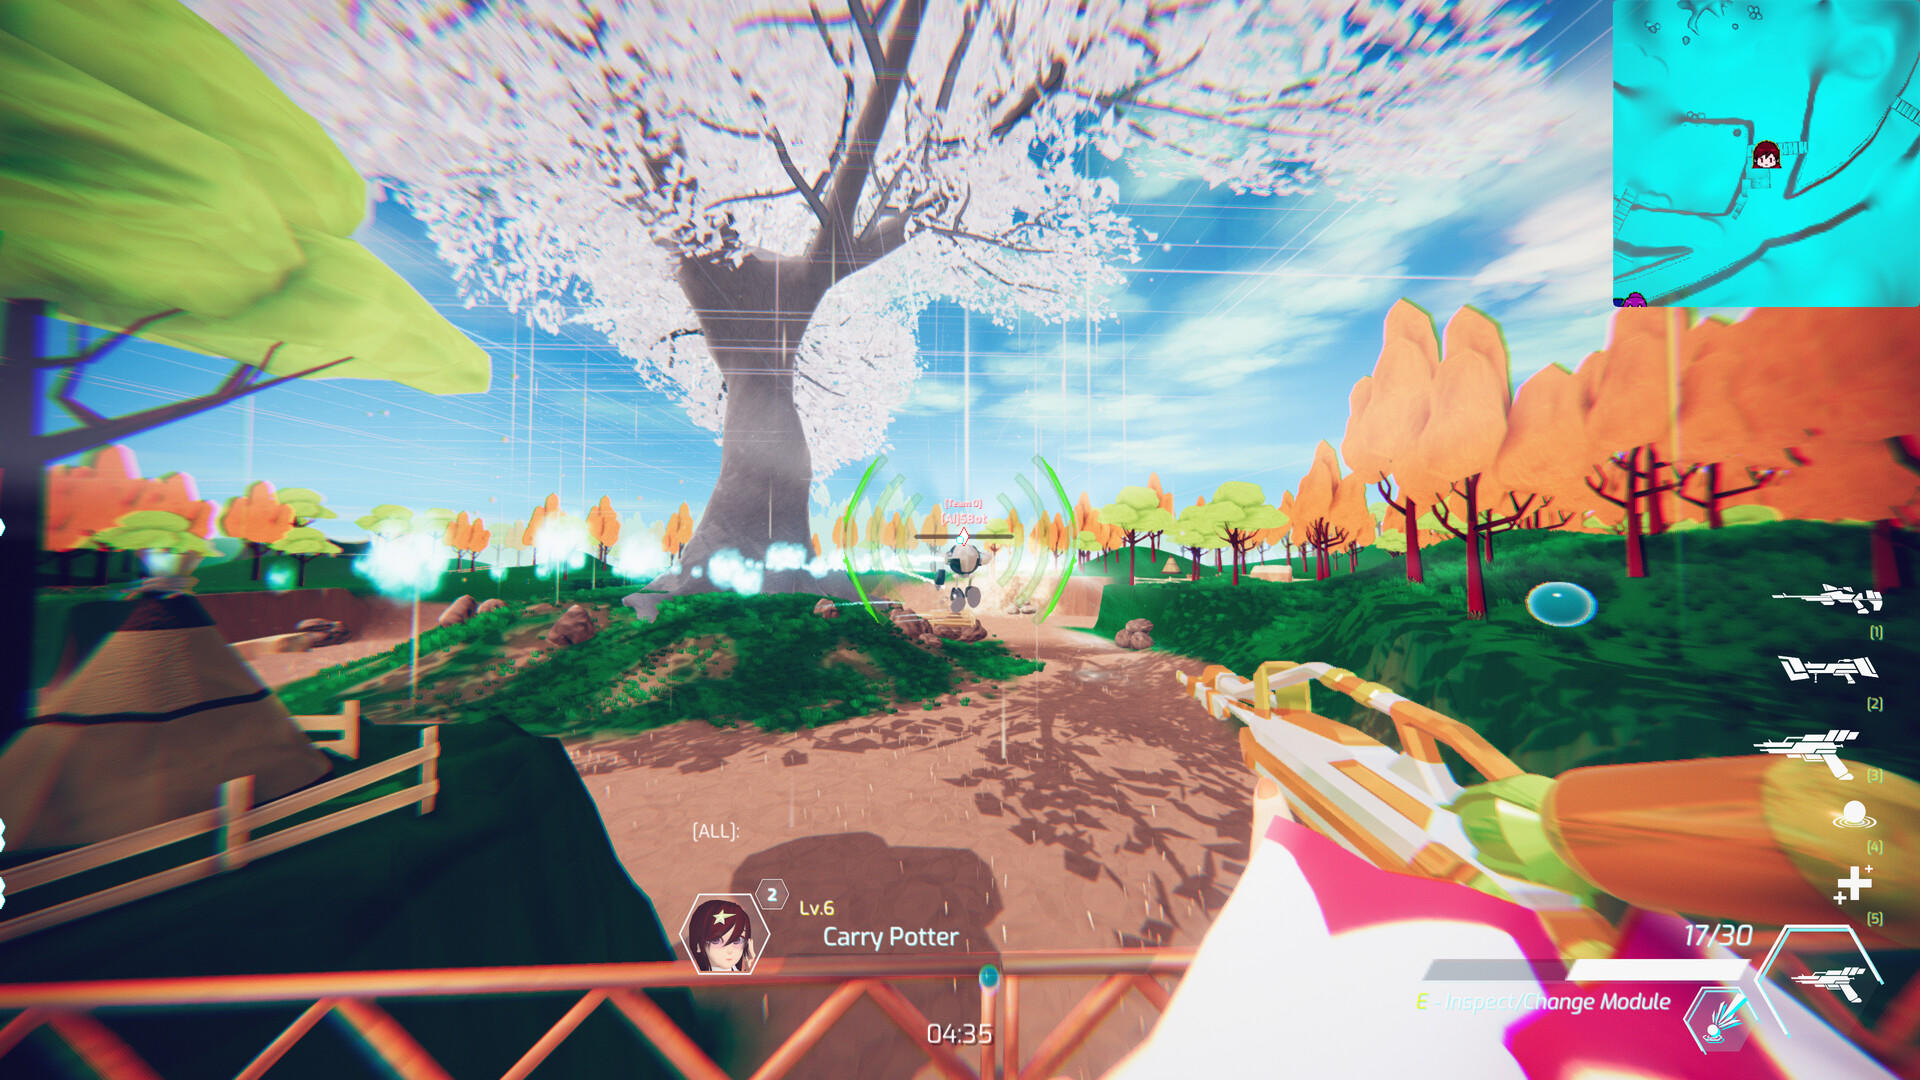 Screenshot 1 of Trianga ၏ပရောဂျက်- Battle Splash 2.0 